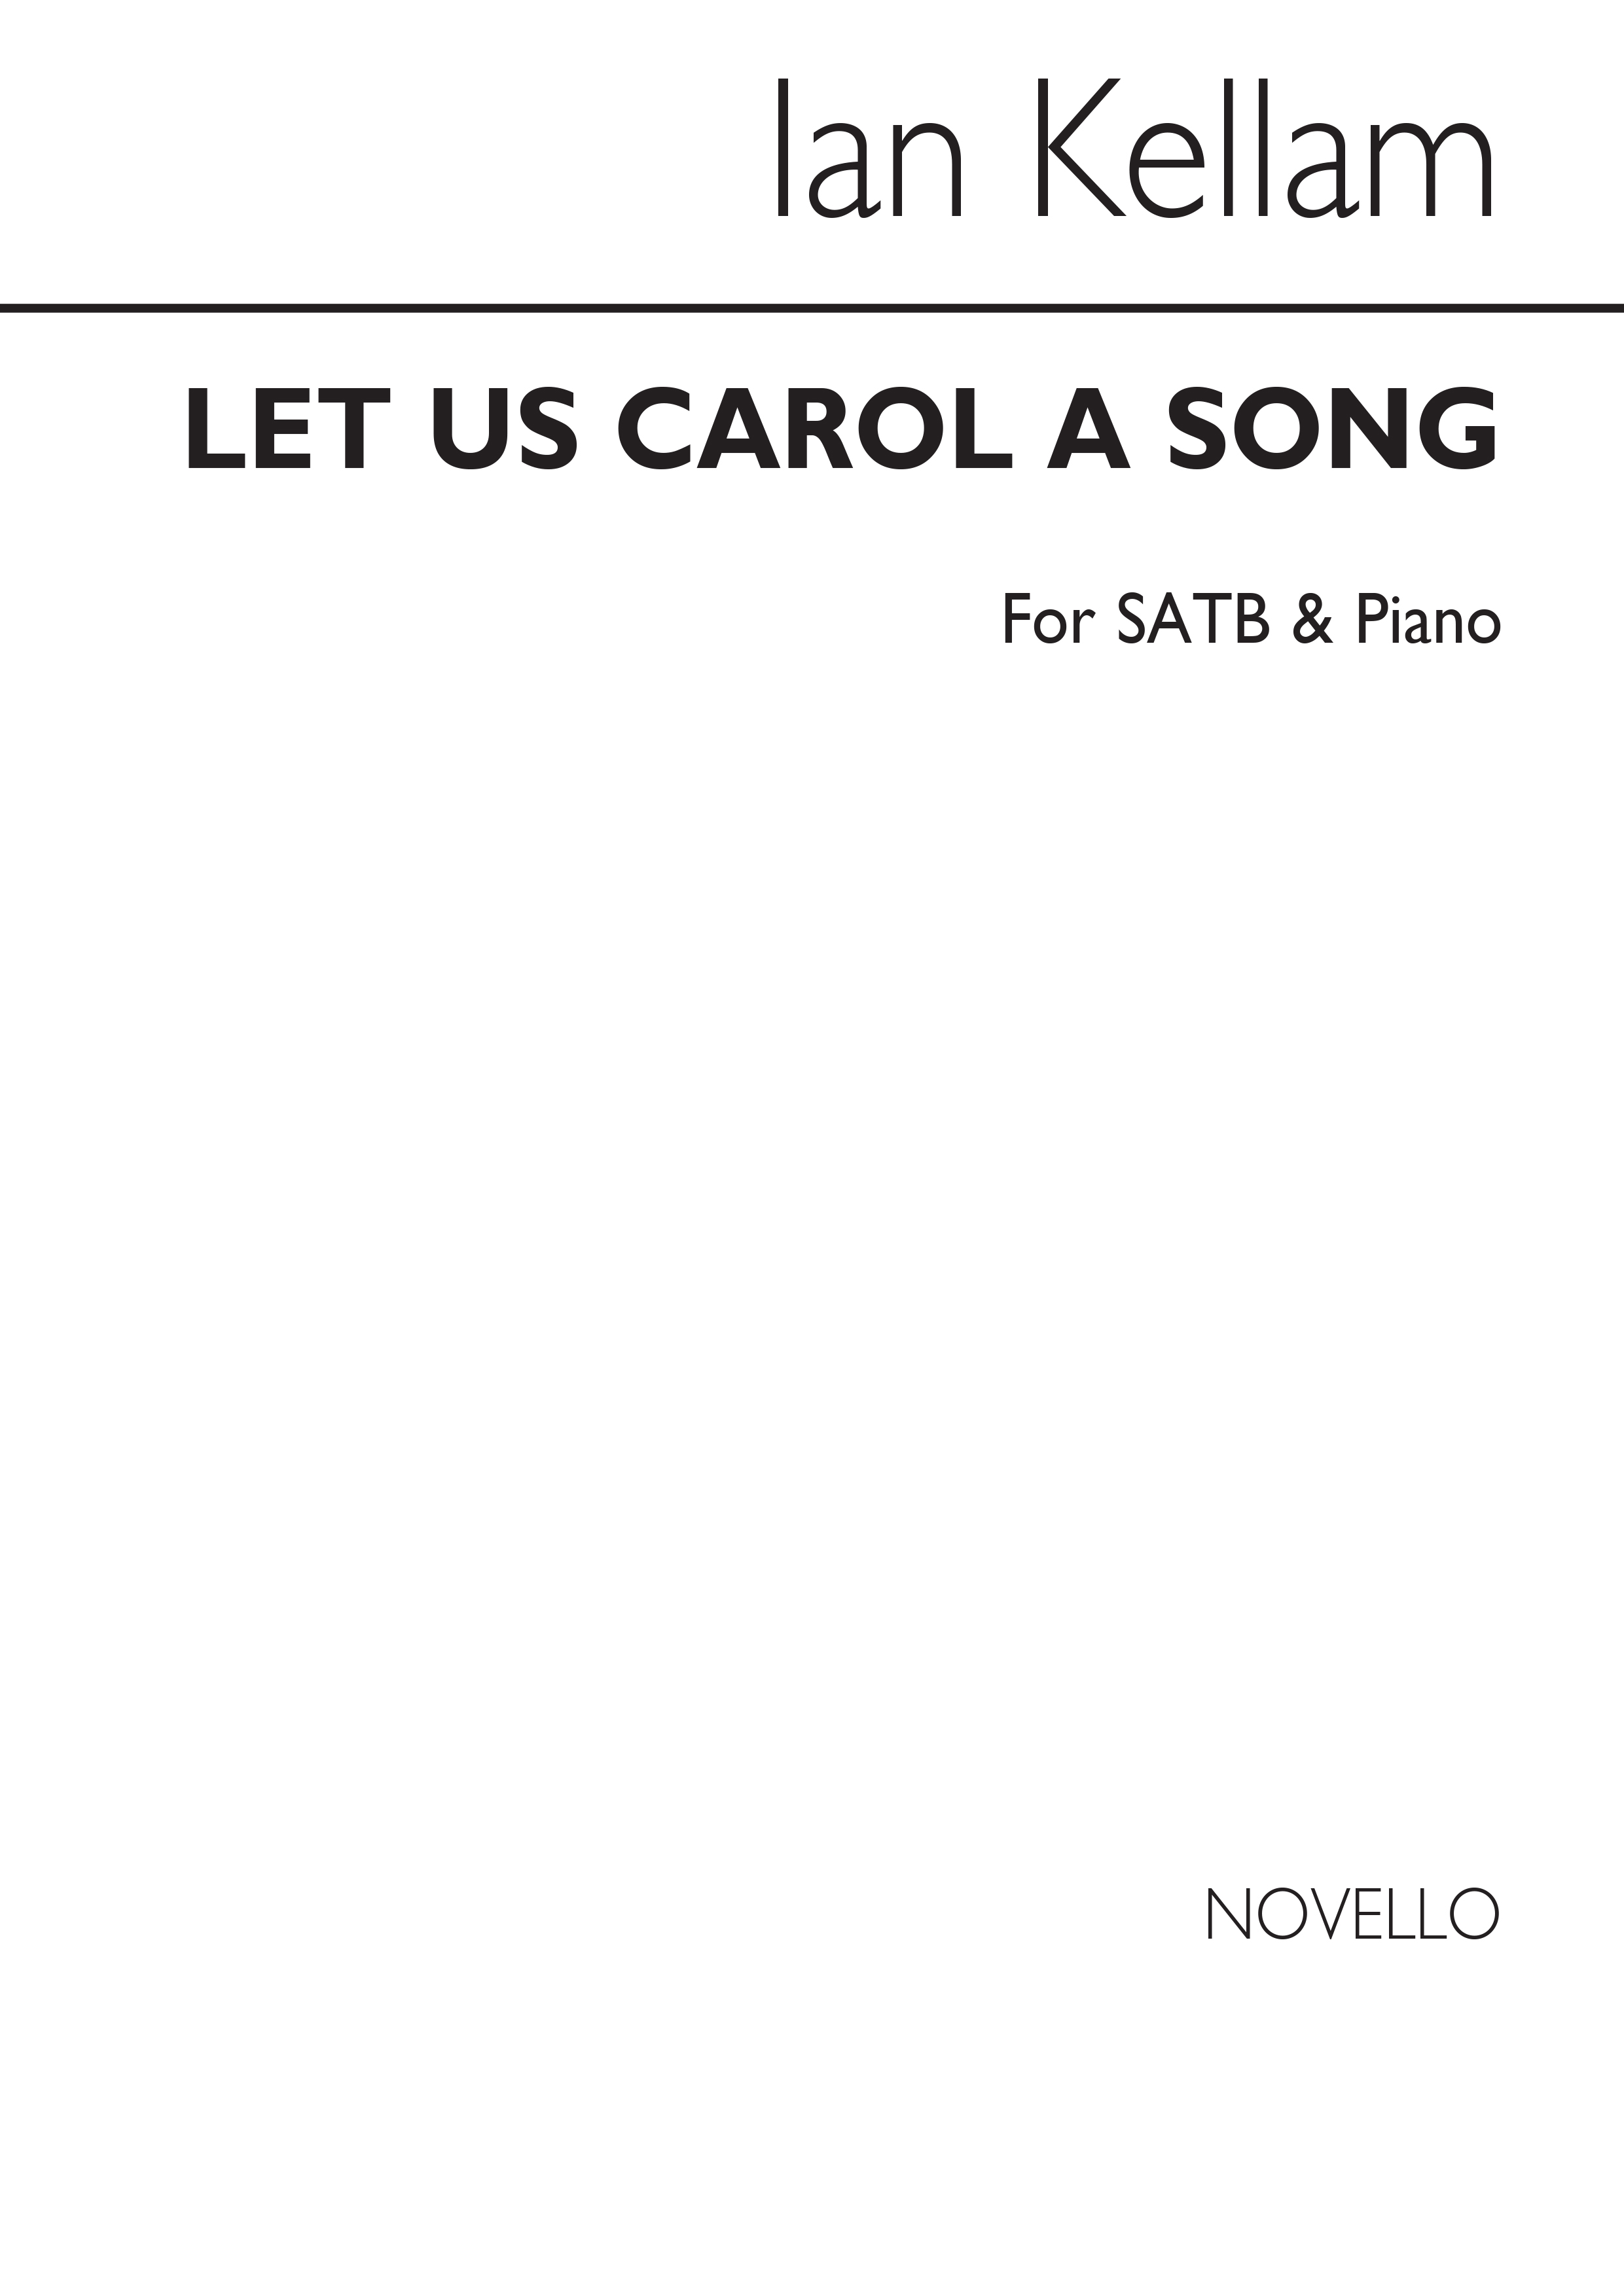 Kellam: Let Us Carol A Song for SATB Chorus and Piano